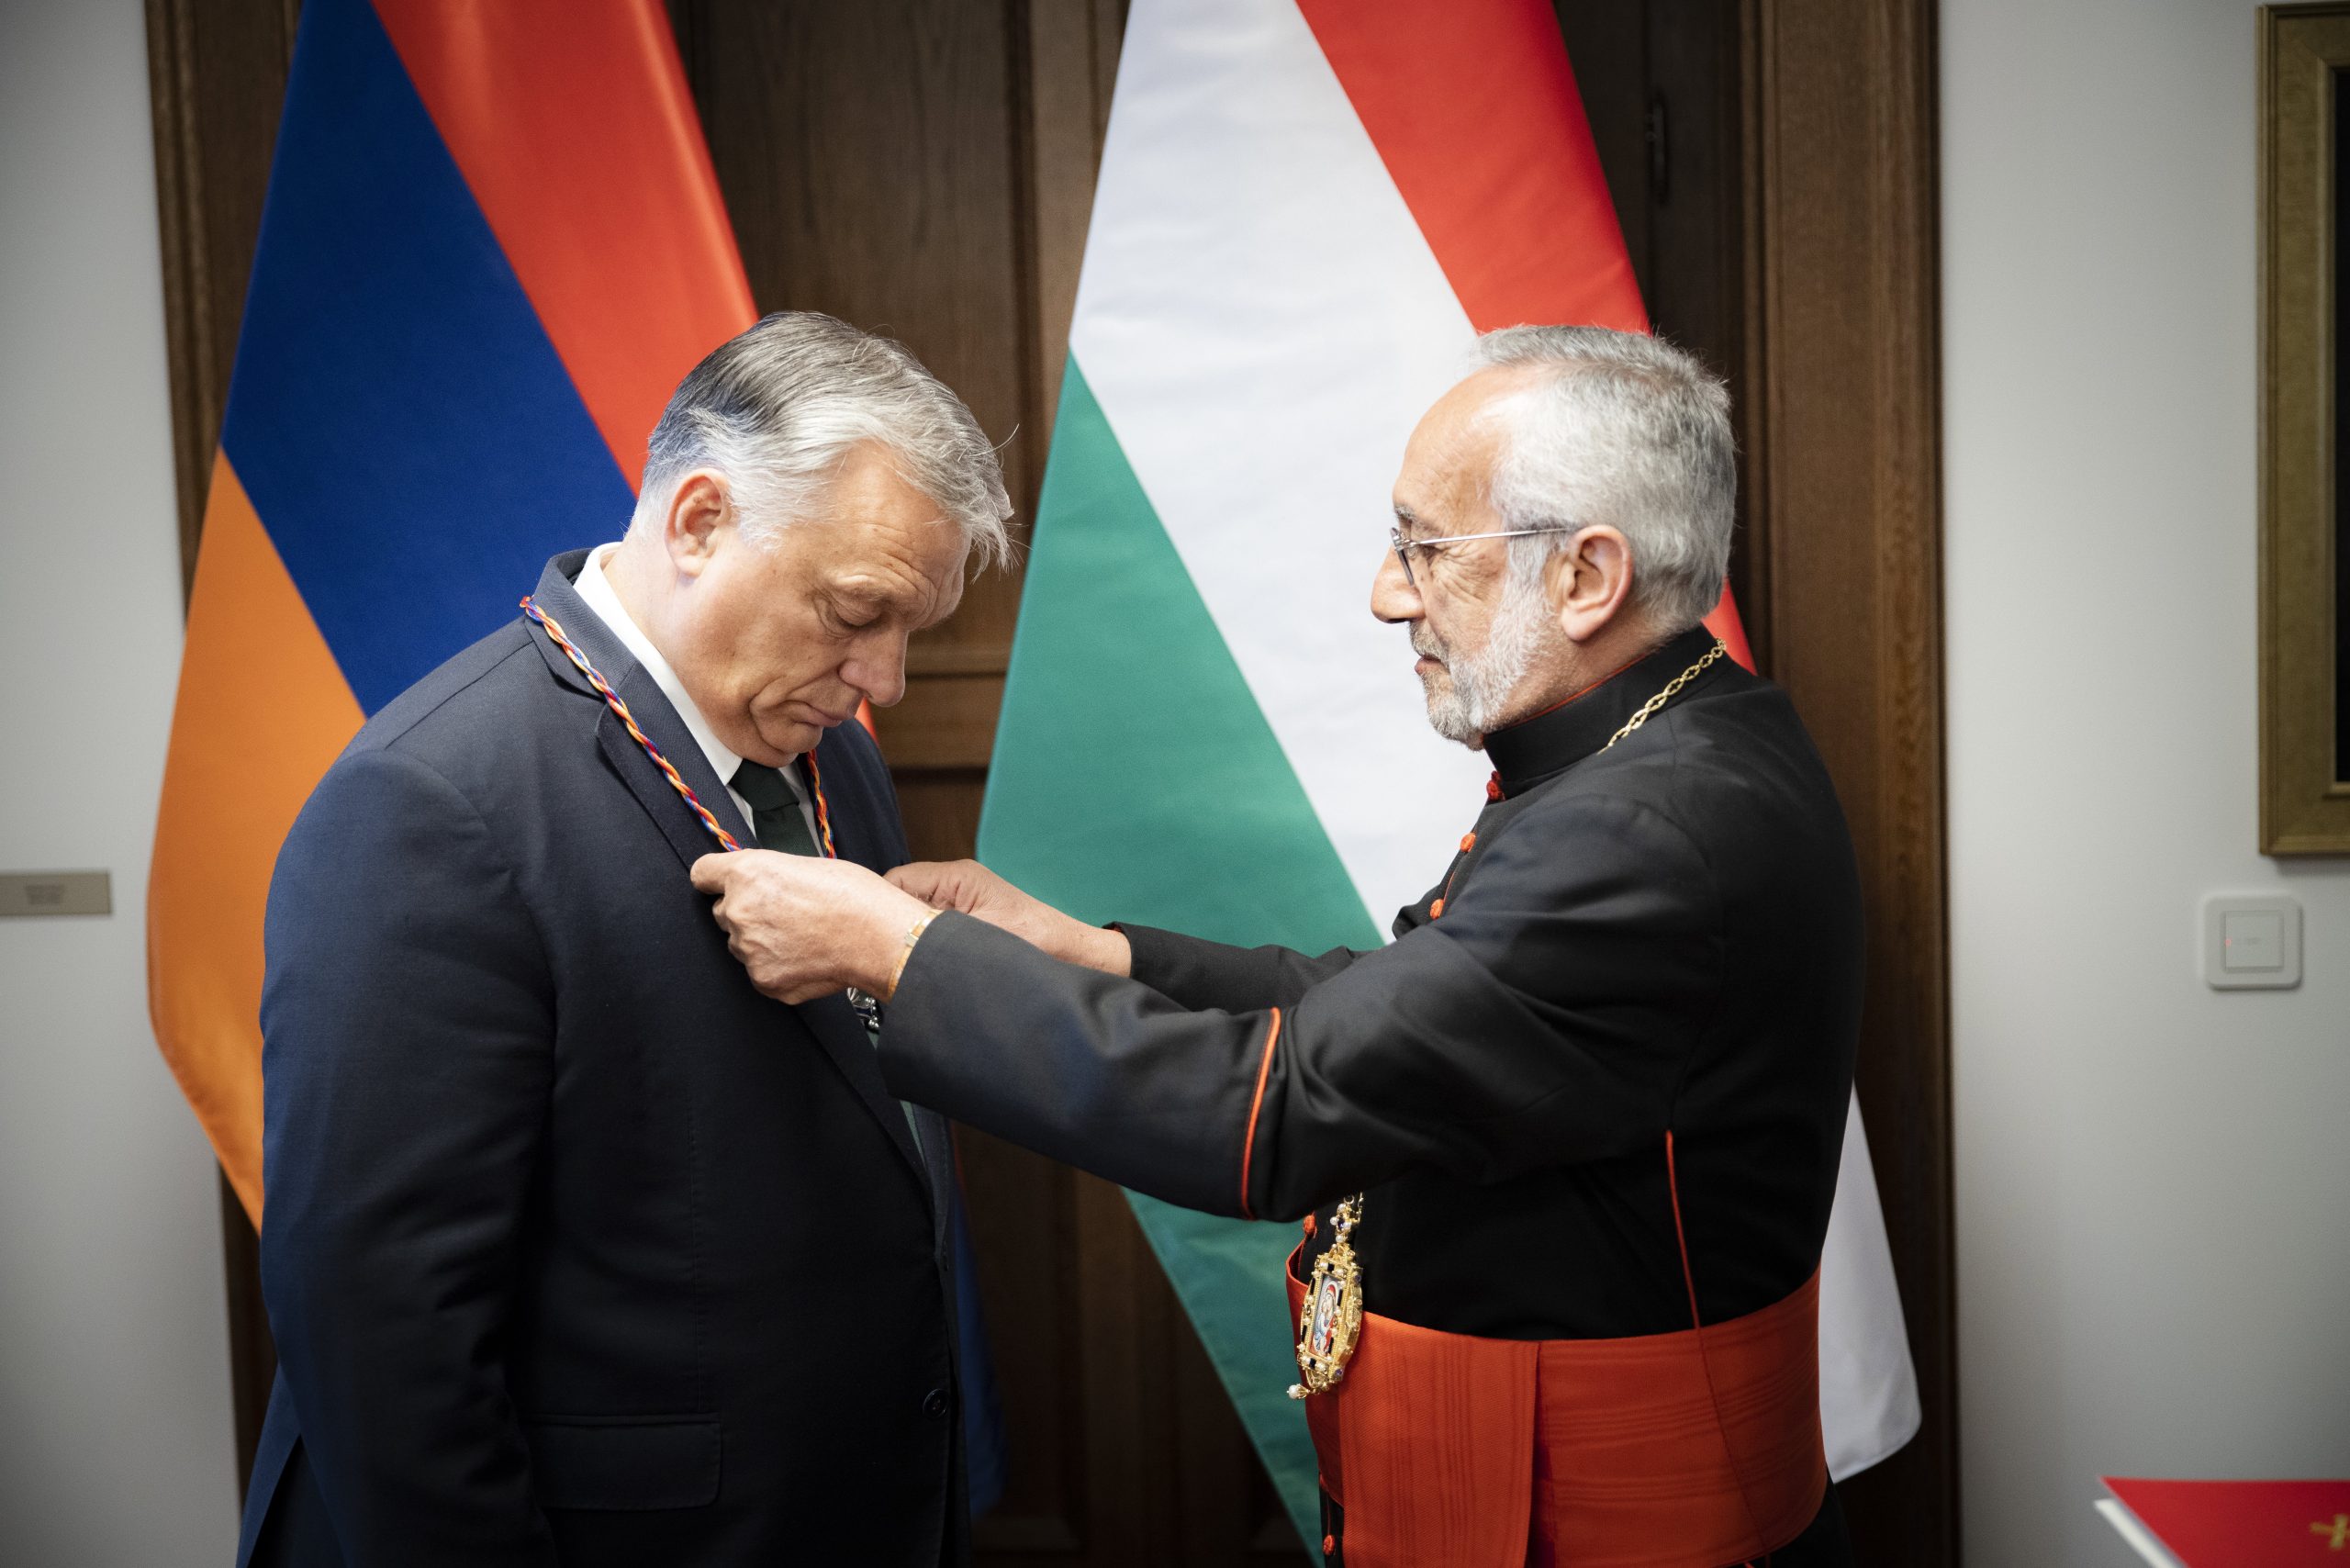 Head of Armenian Catholic Church Decorates Viktor Orbán